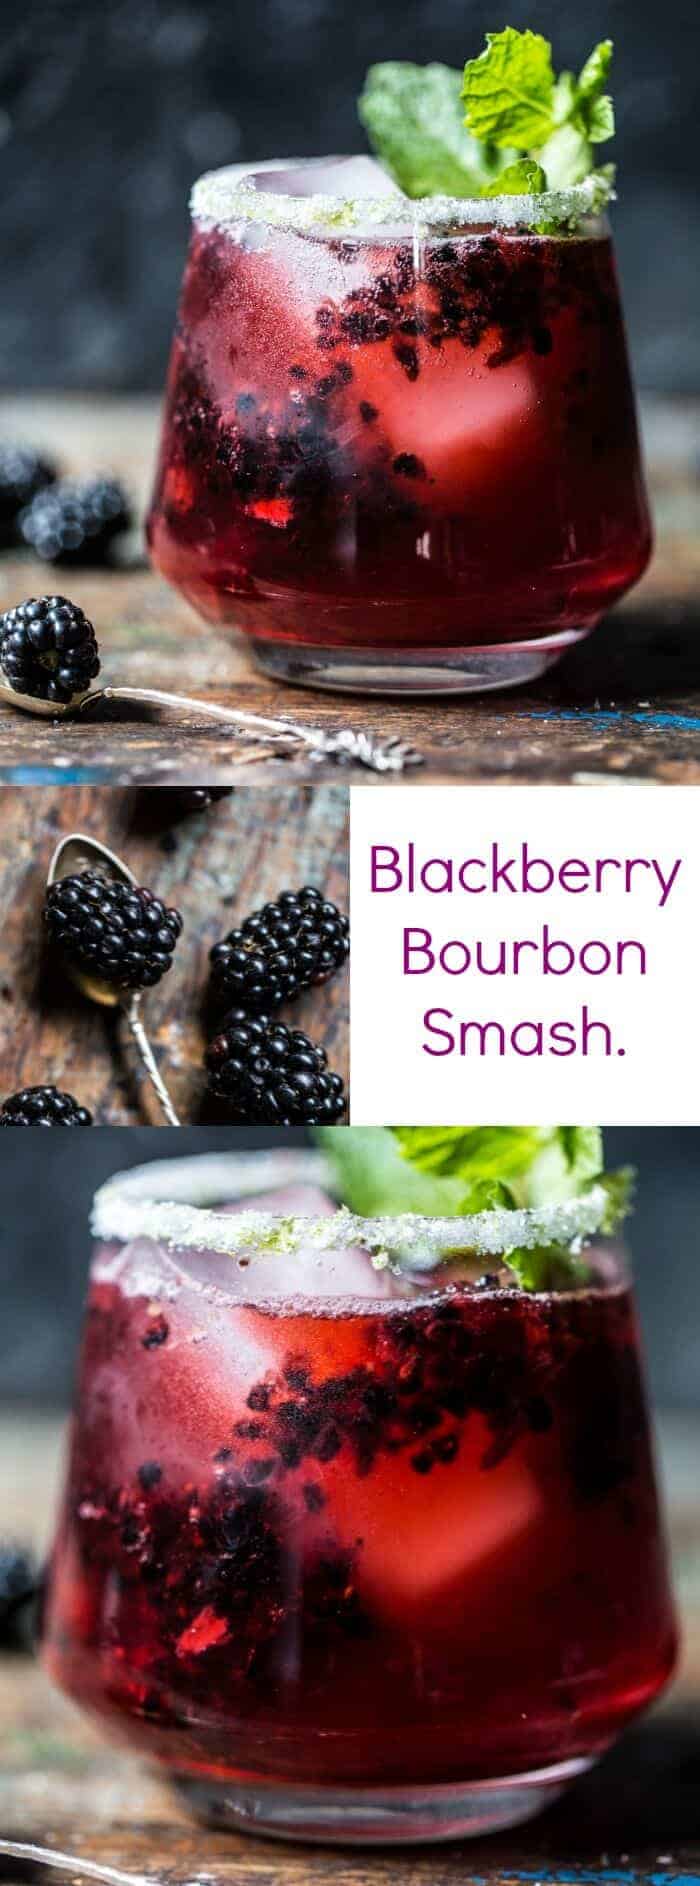 BlackBerry Bourbon Smash |halfbakedharvest.com @hbharvest.